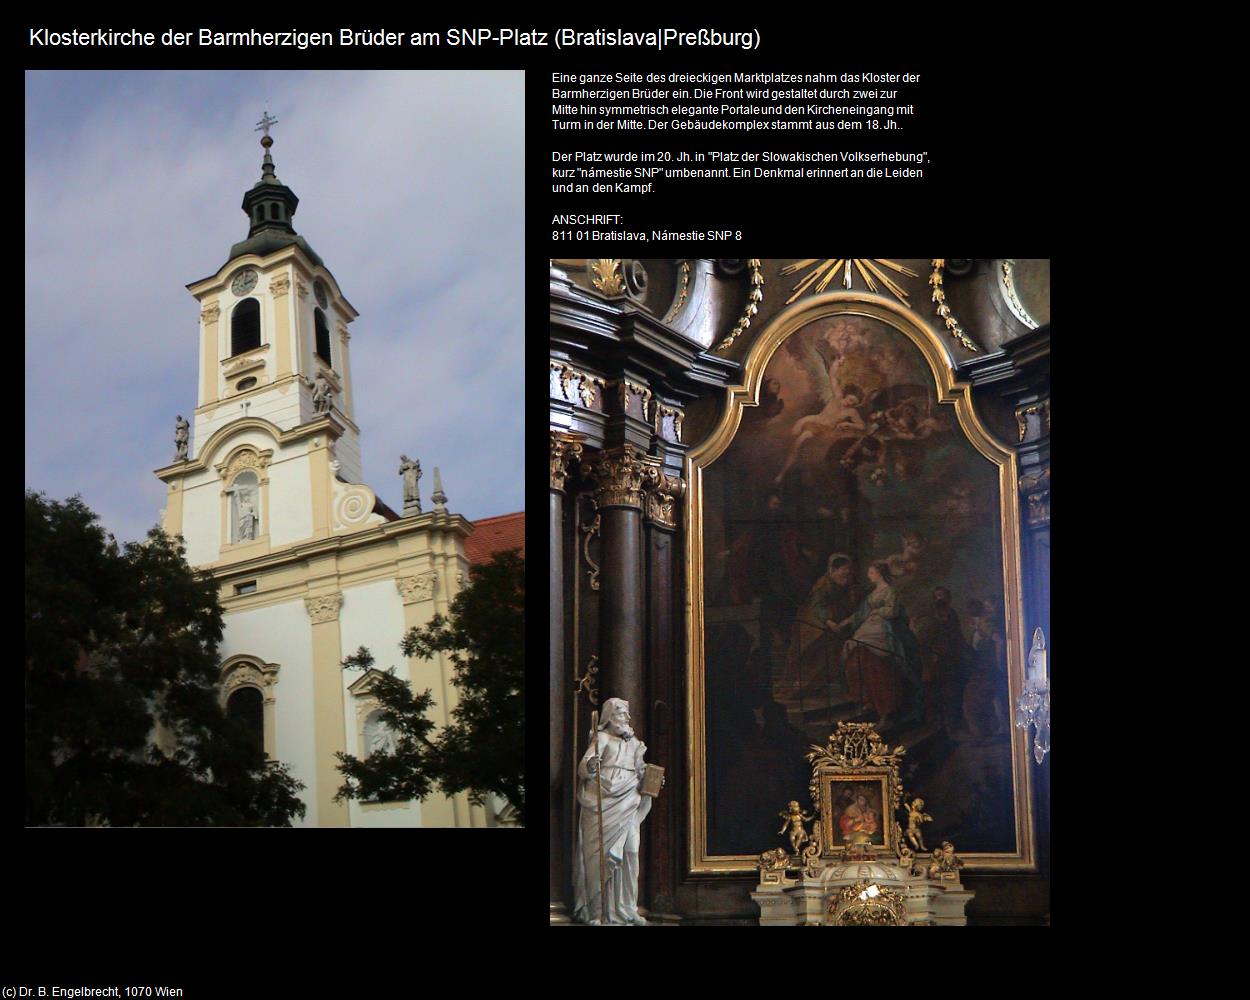 Klosterkirche der Barmherzigen Brüder am SNP-Platz (Bratislava|Preßburg ) in SLOWAKEI